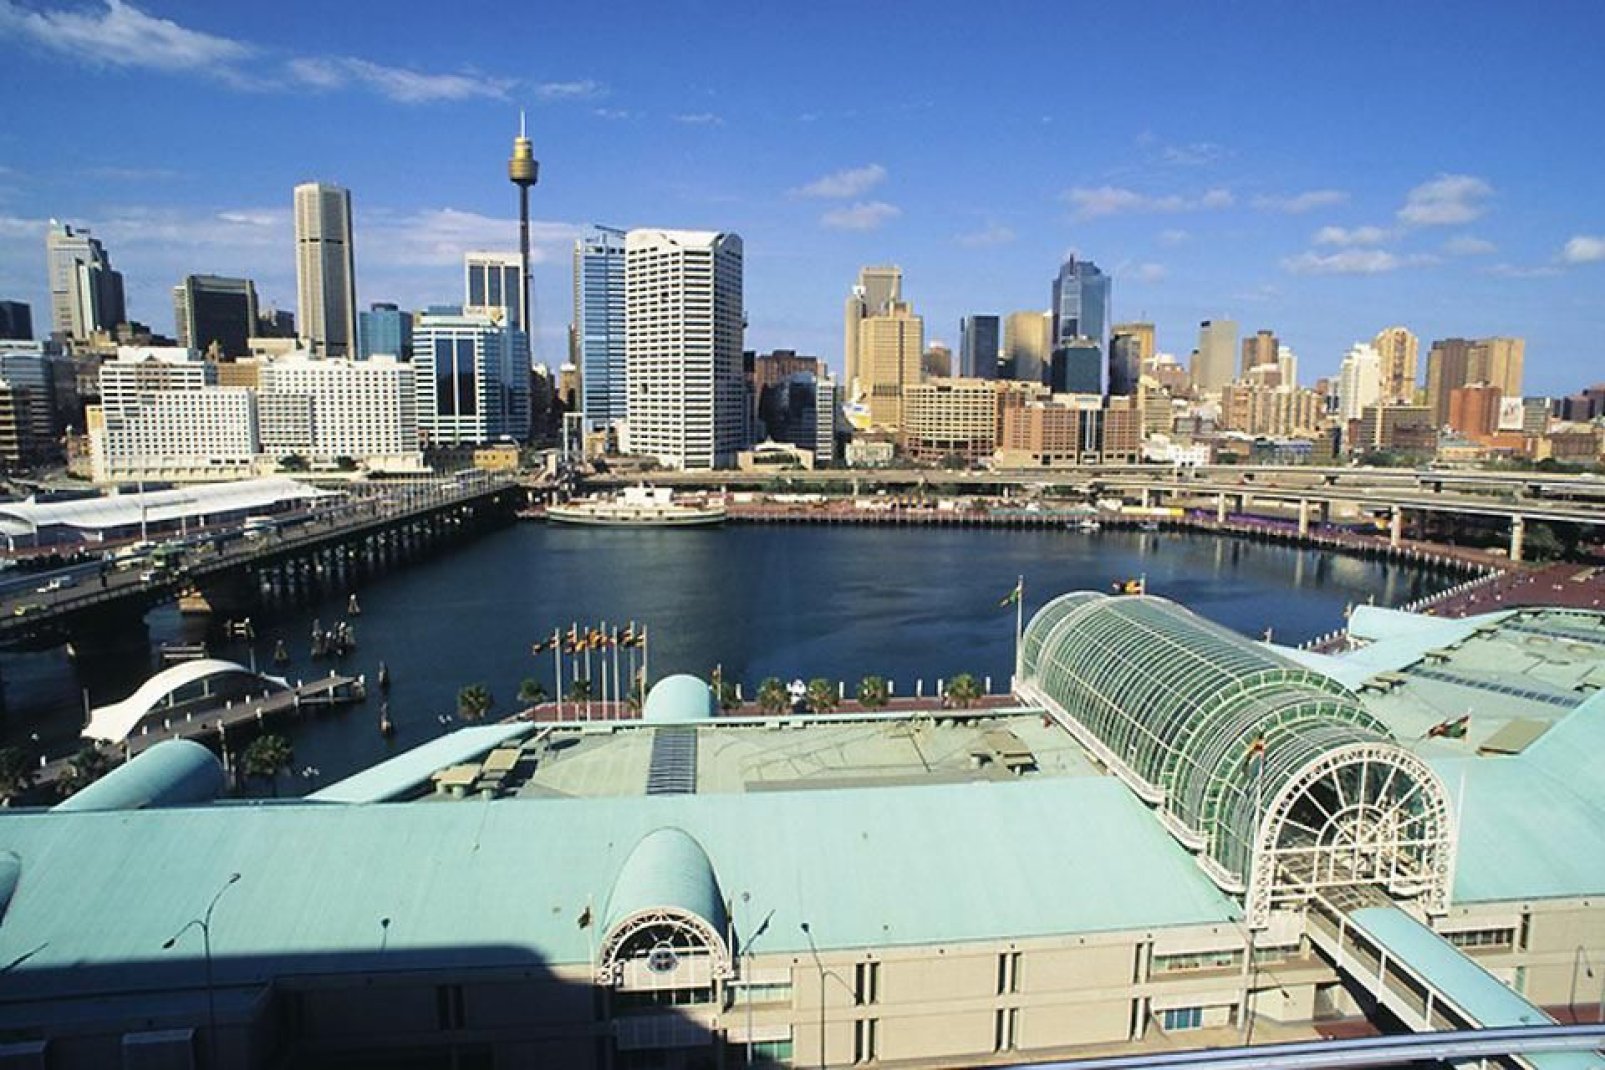 Die Einwohner von Sydney werden auf Englisch "Sydneysiders" genannt.